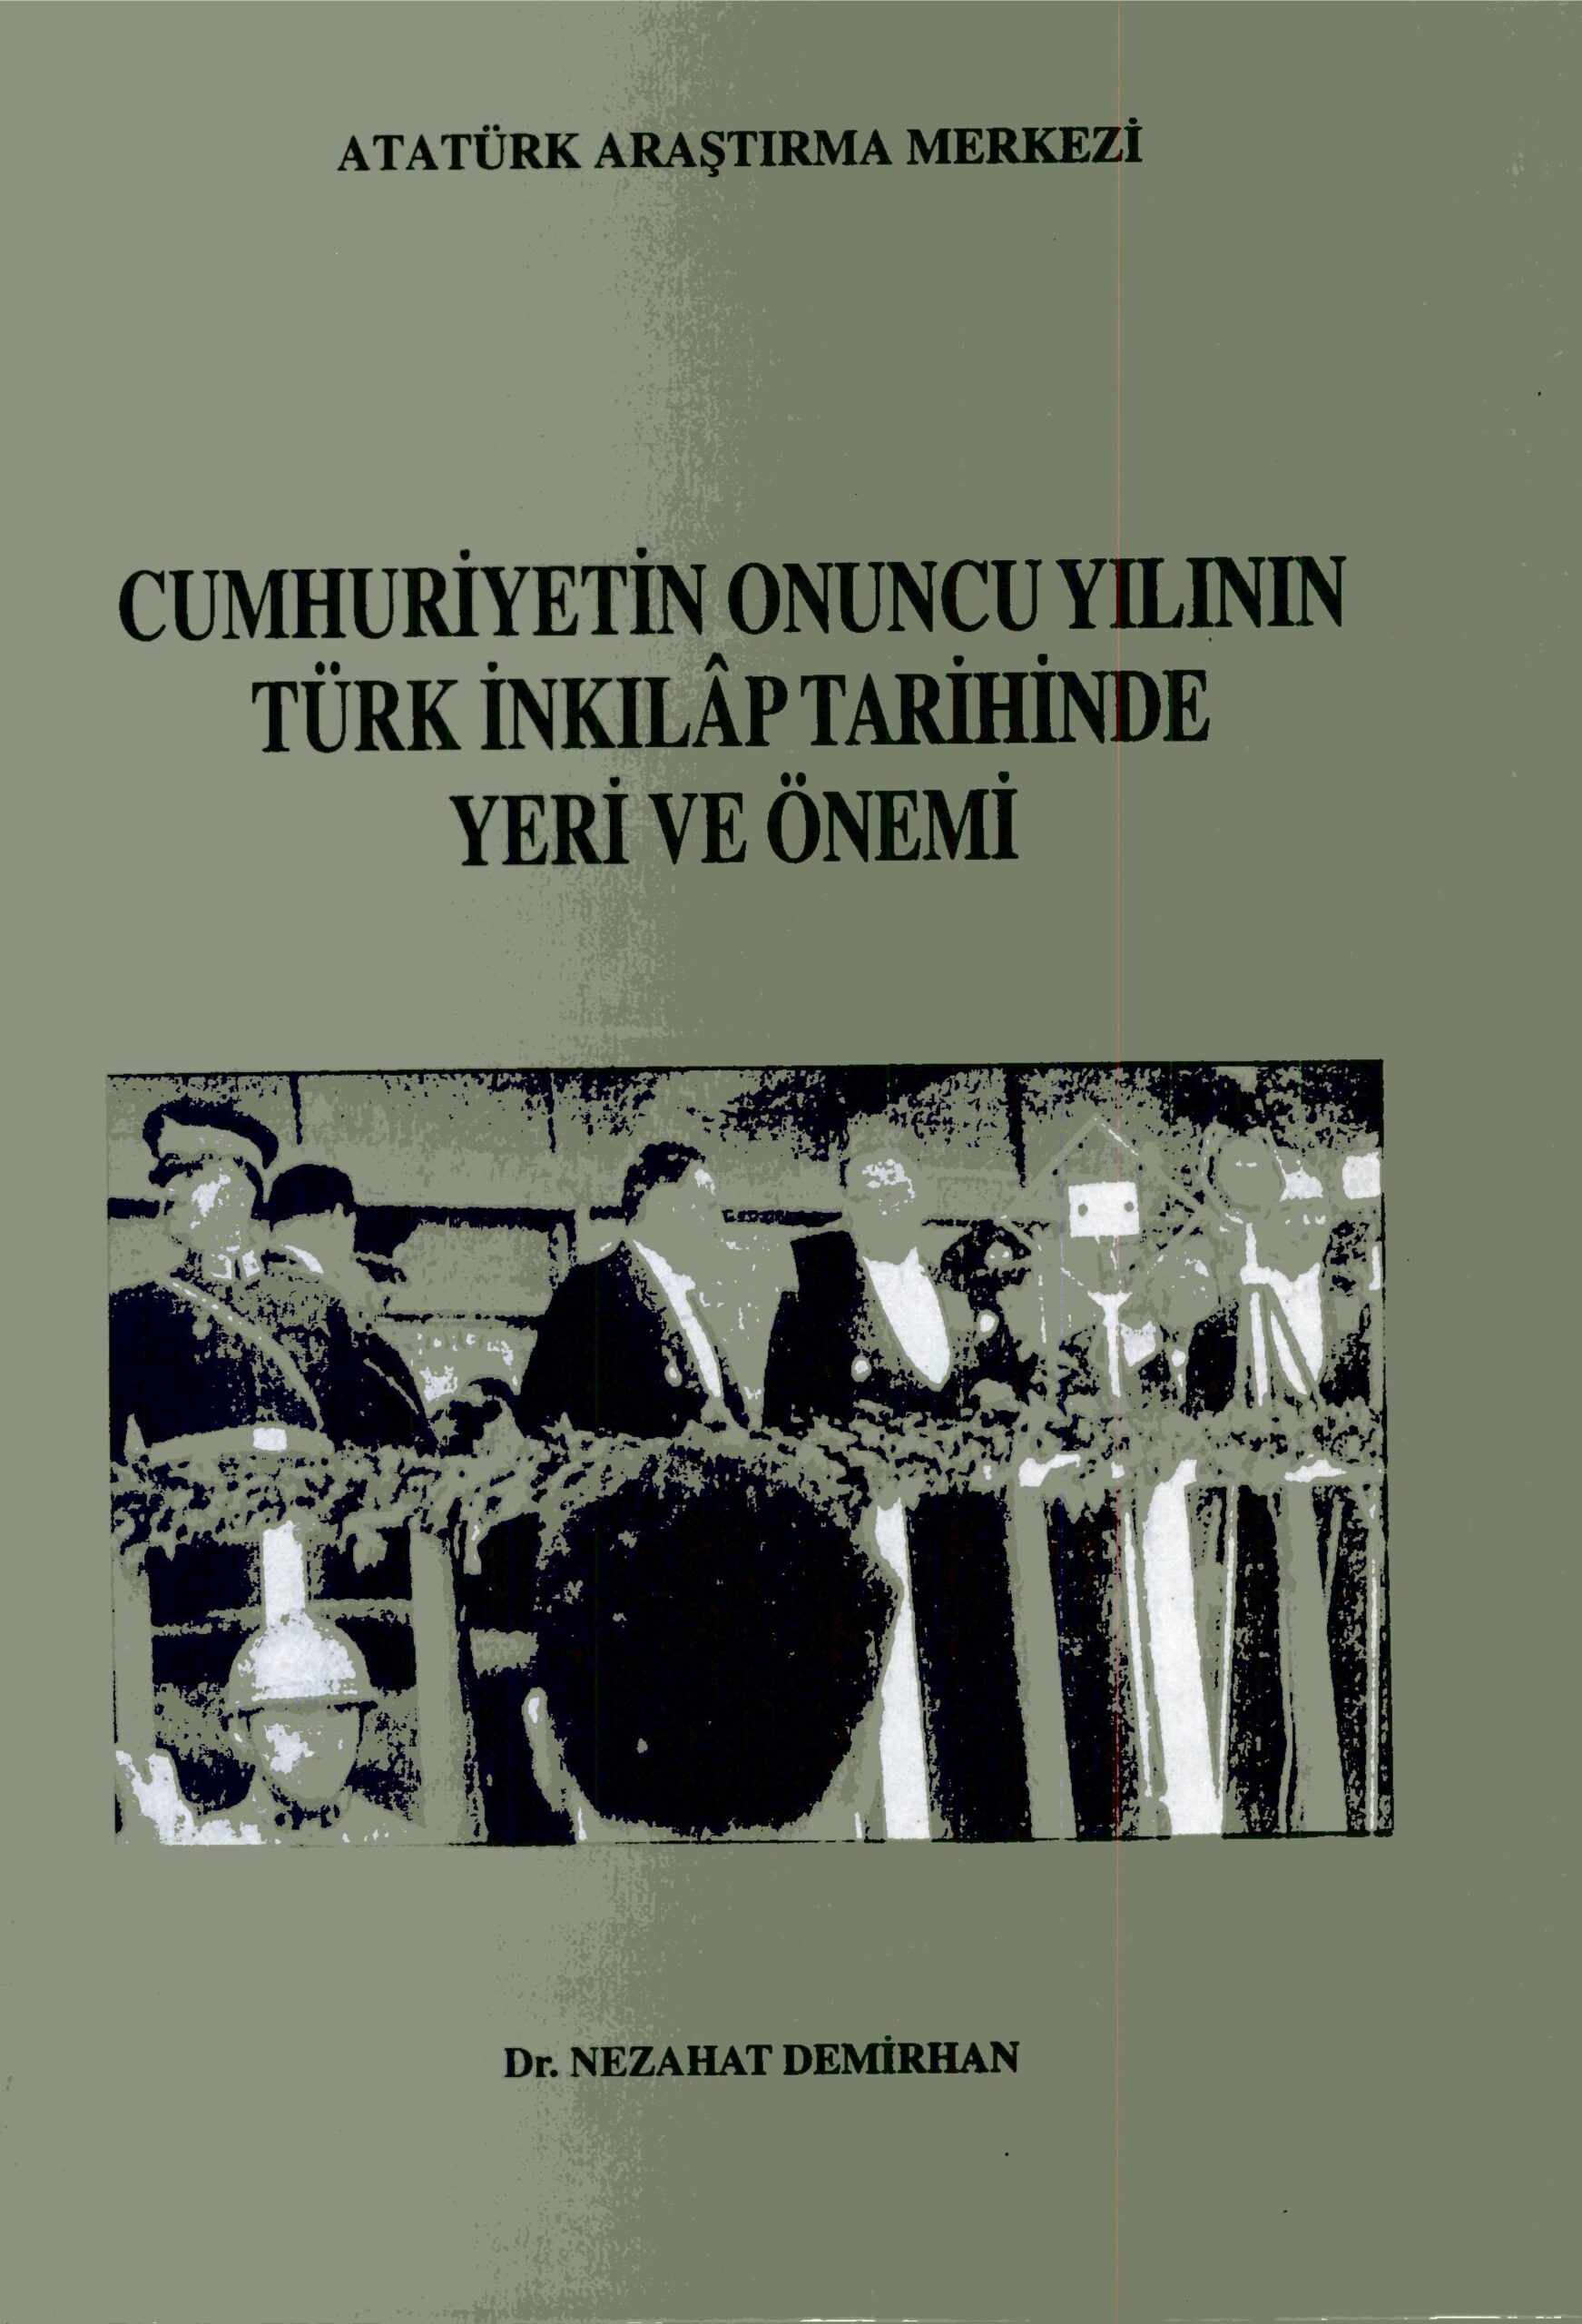 Cumhuriyetin Onuncu Yılının Türk İnkılap Tarihindeki Yeri ve Önemi